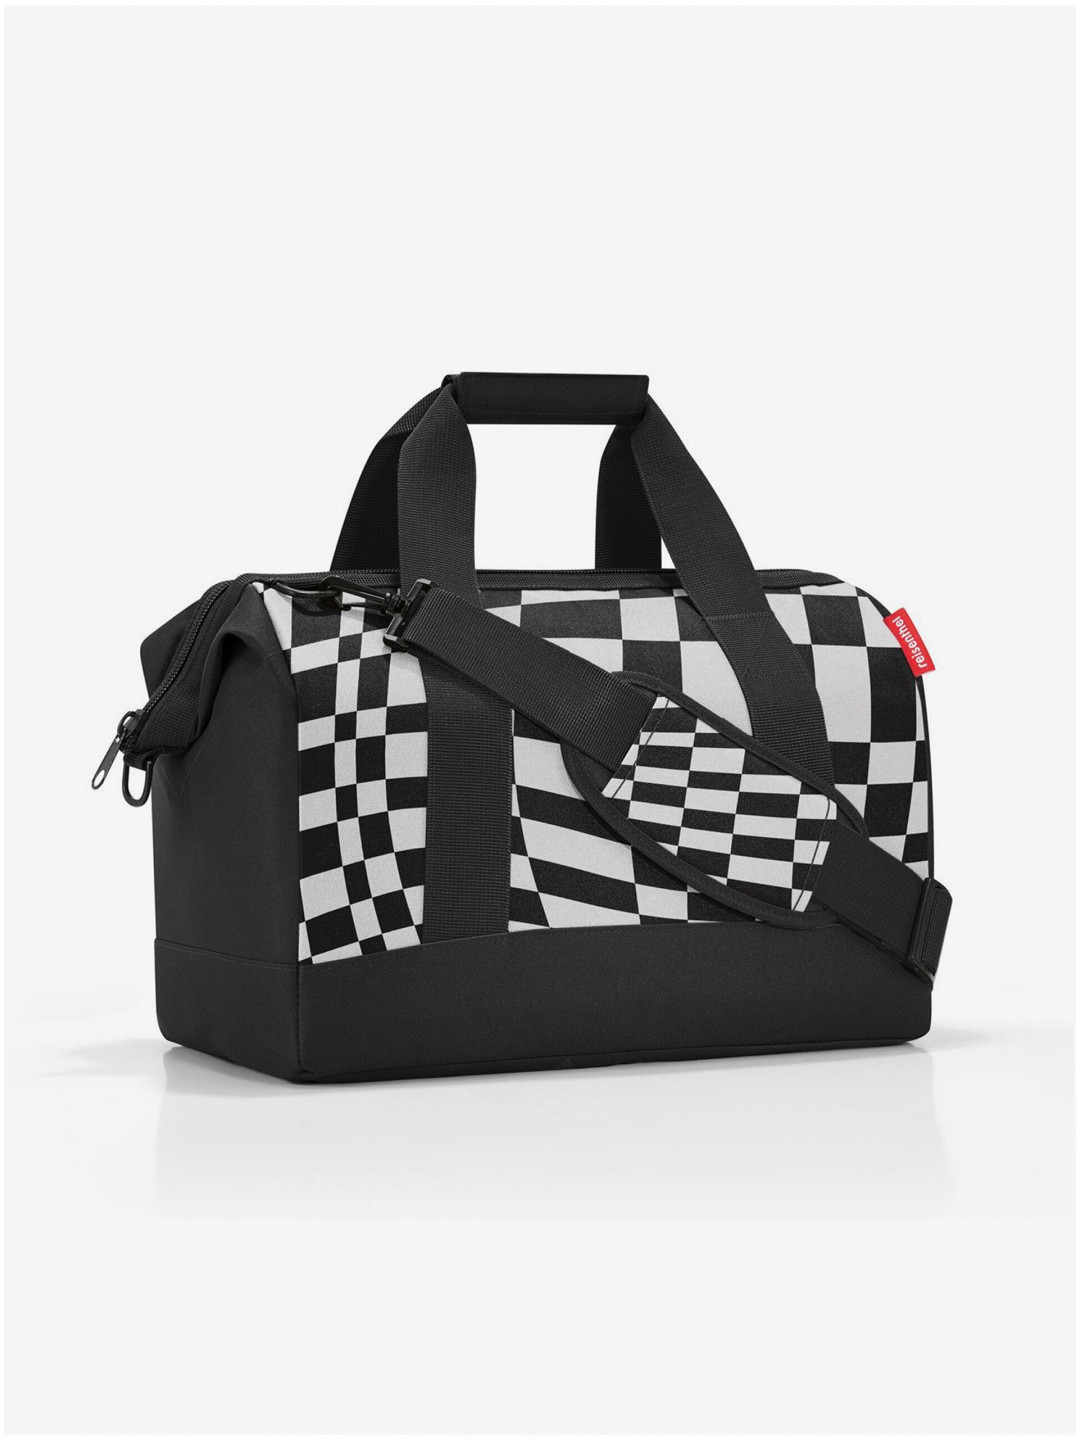 Bílo-černá vzorovaná cestovní taška Reisenthel Allrounder M Op-Art